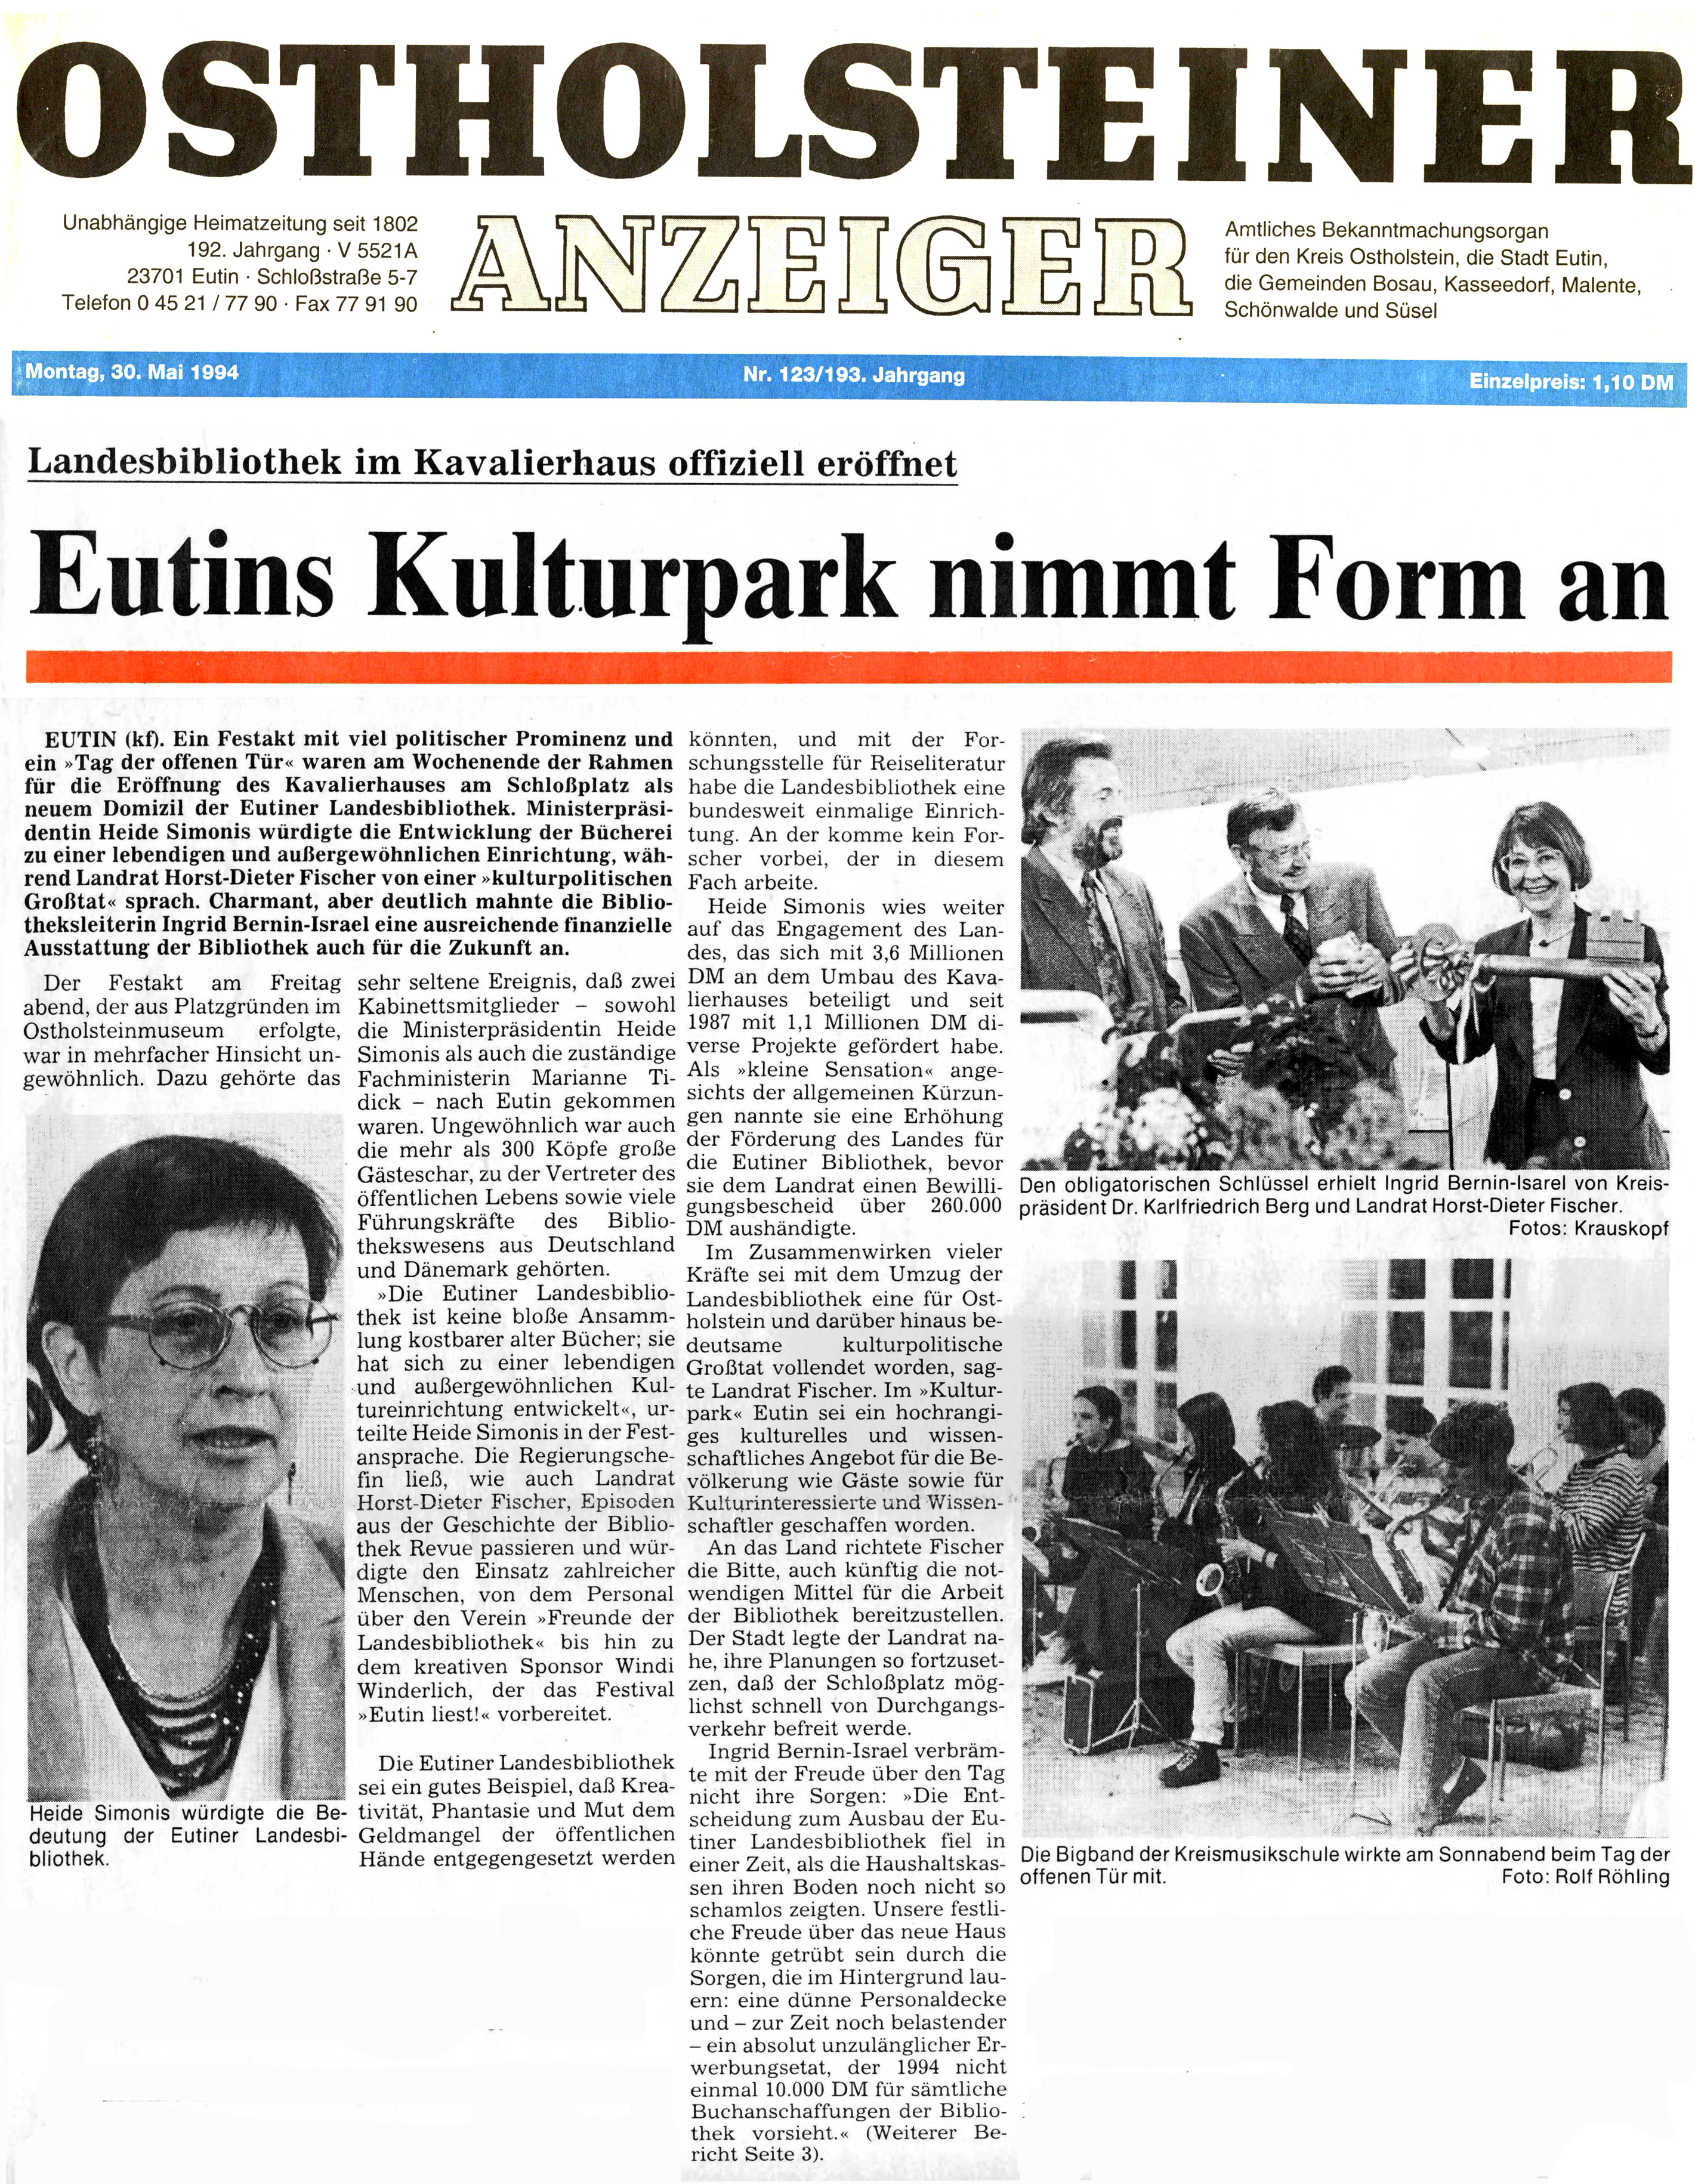 Bericht aus dem Ostholsteiner Anzeiger vom 30. Mai 1994 über die neuen Entwicklungen des Eutiner Kulturparks